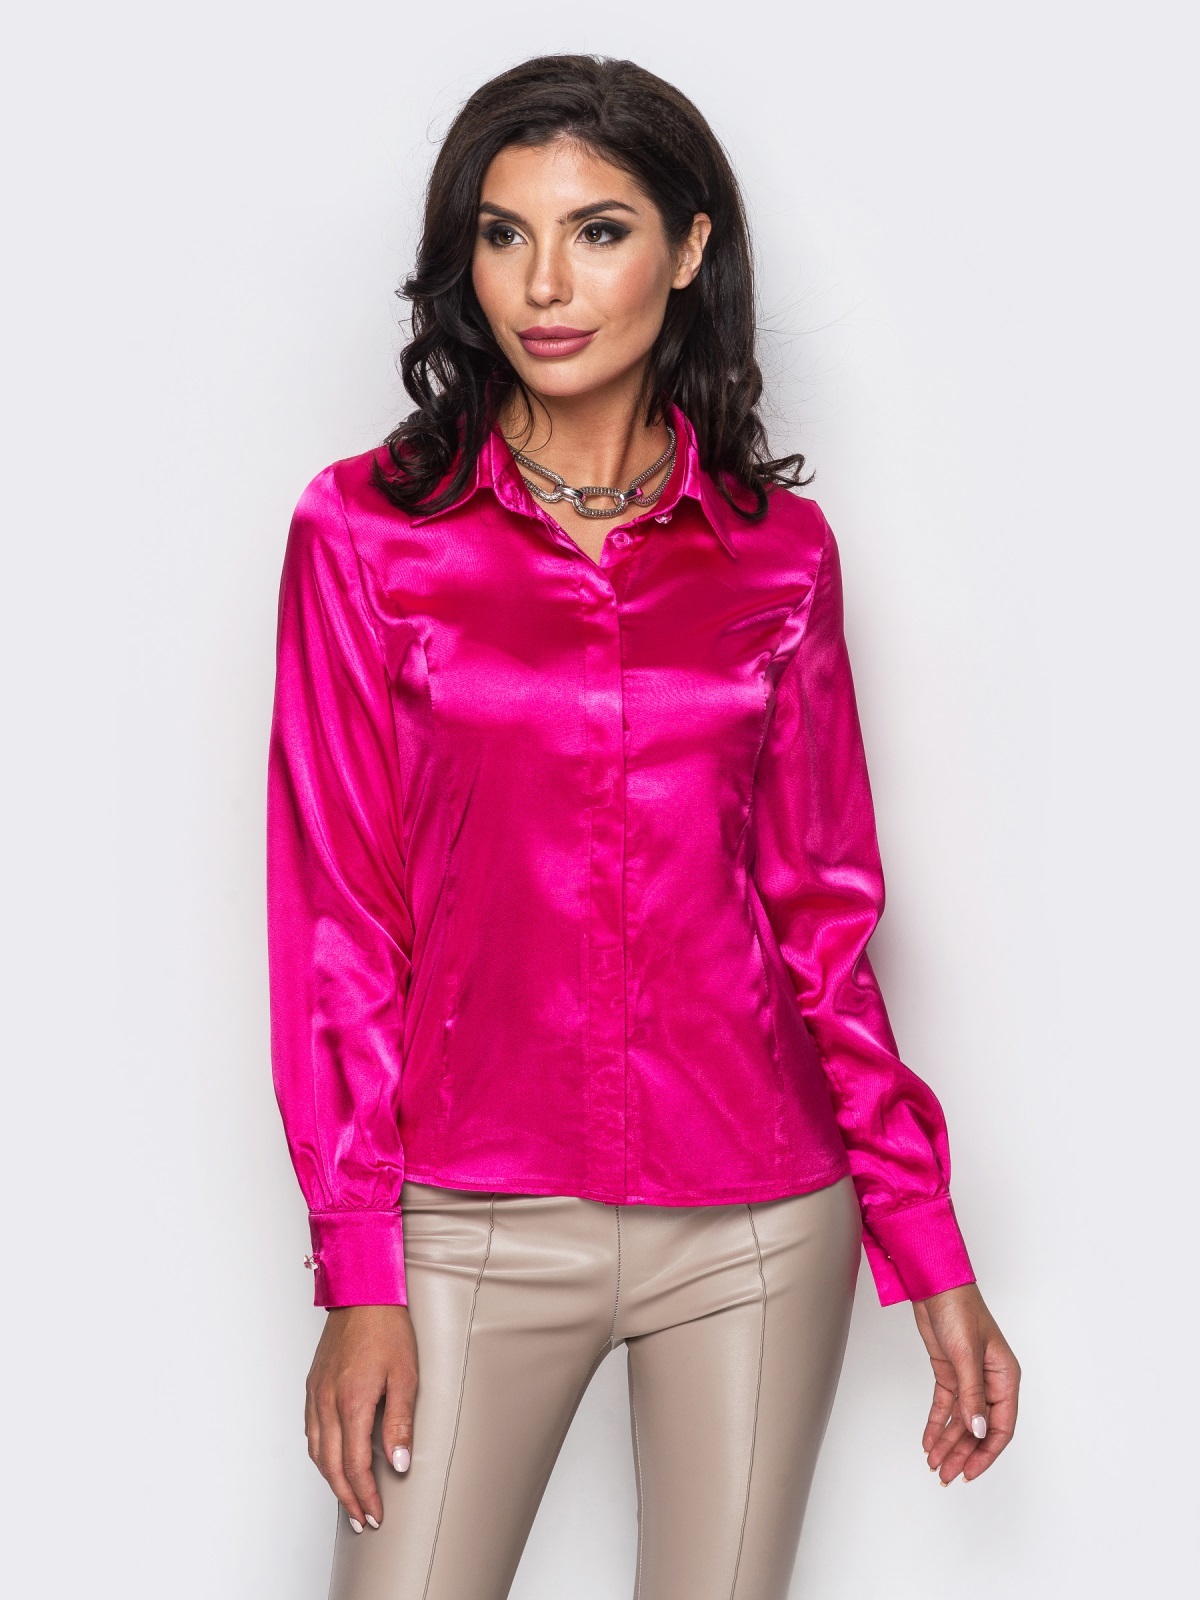 Атласная кофта. Атласная рубашка женская. Розовая атласная рубашка. Розовая атласная блузка. Блузки из атласа.